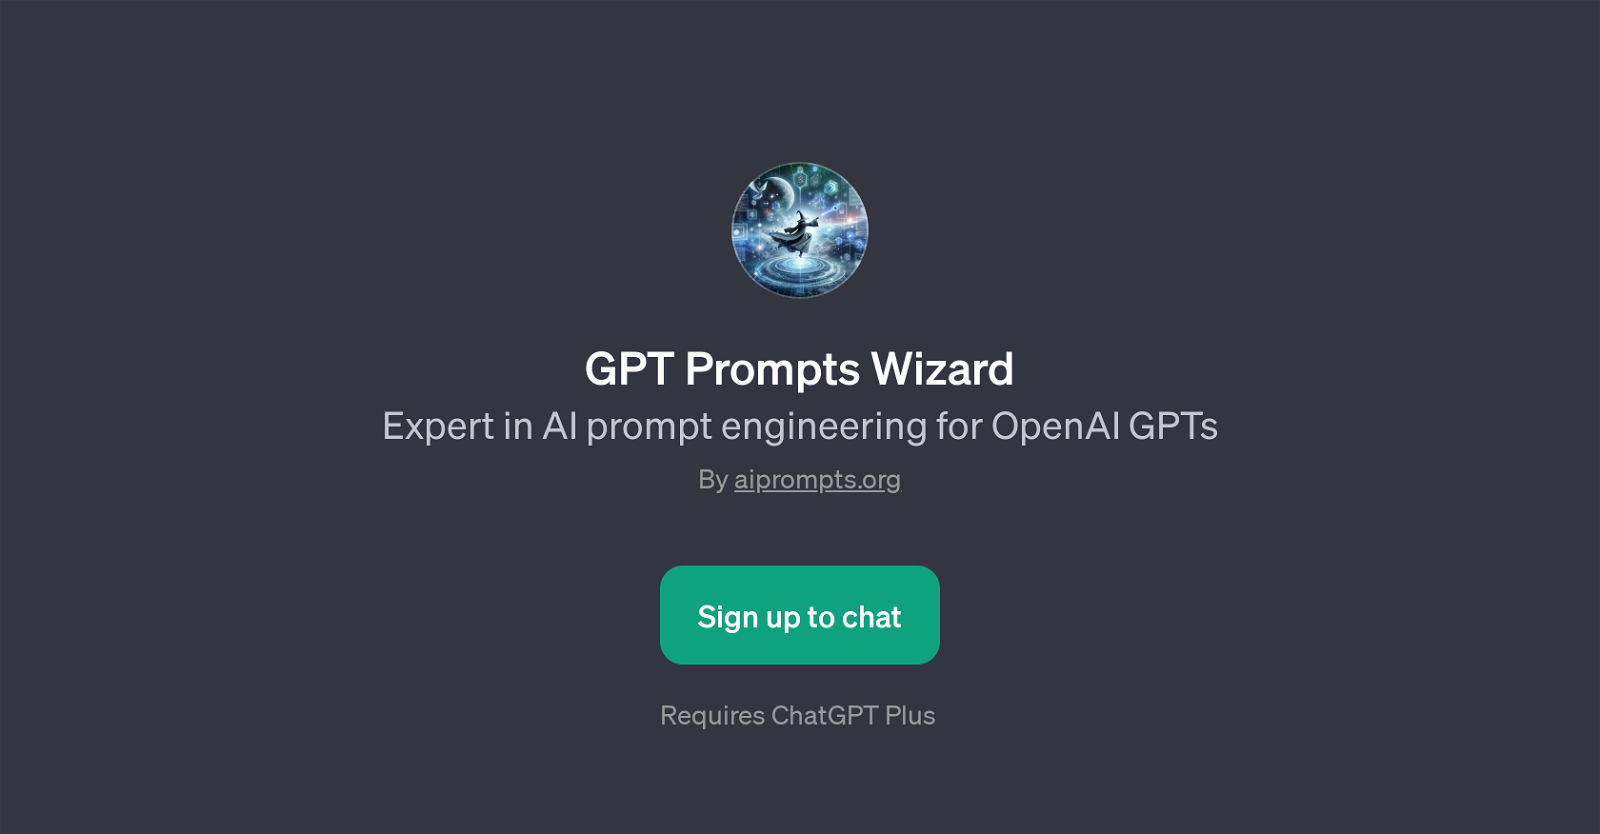 GPT Prompts Wizard website